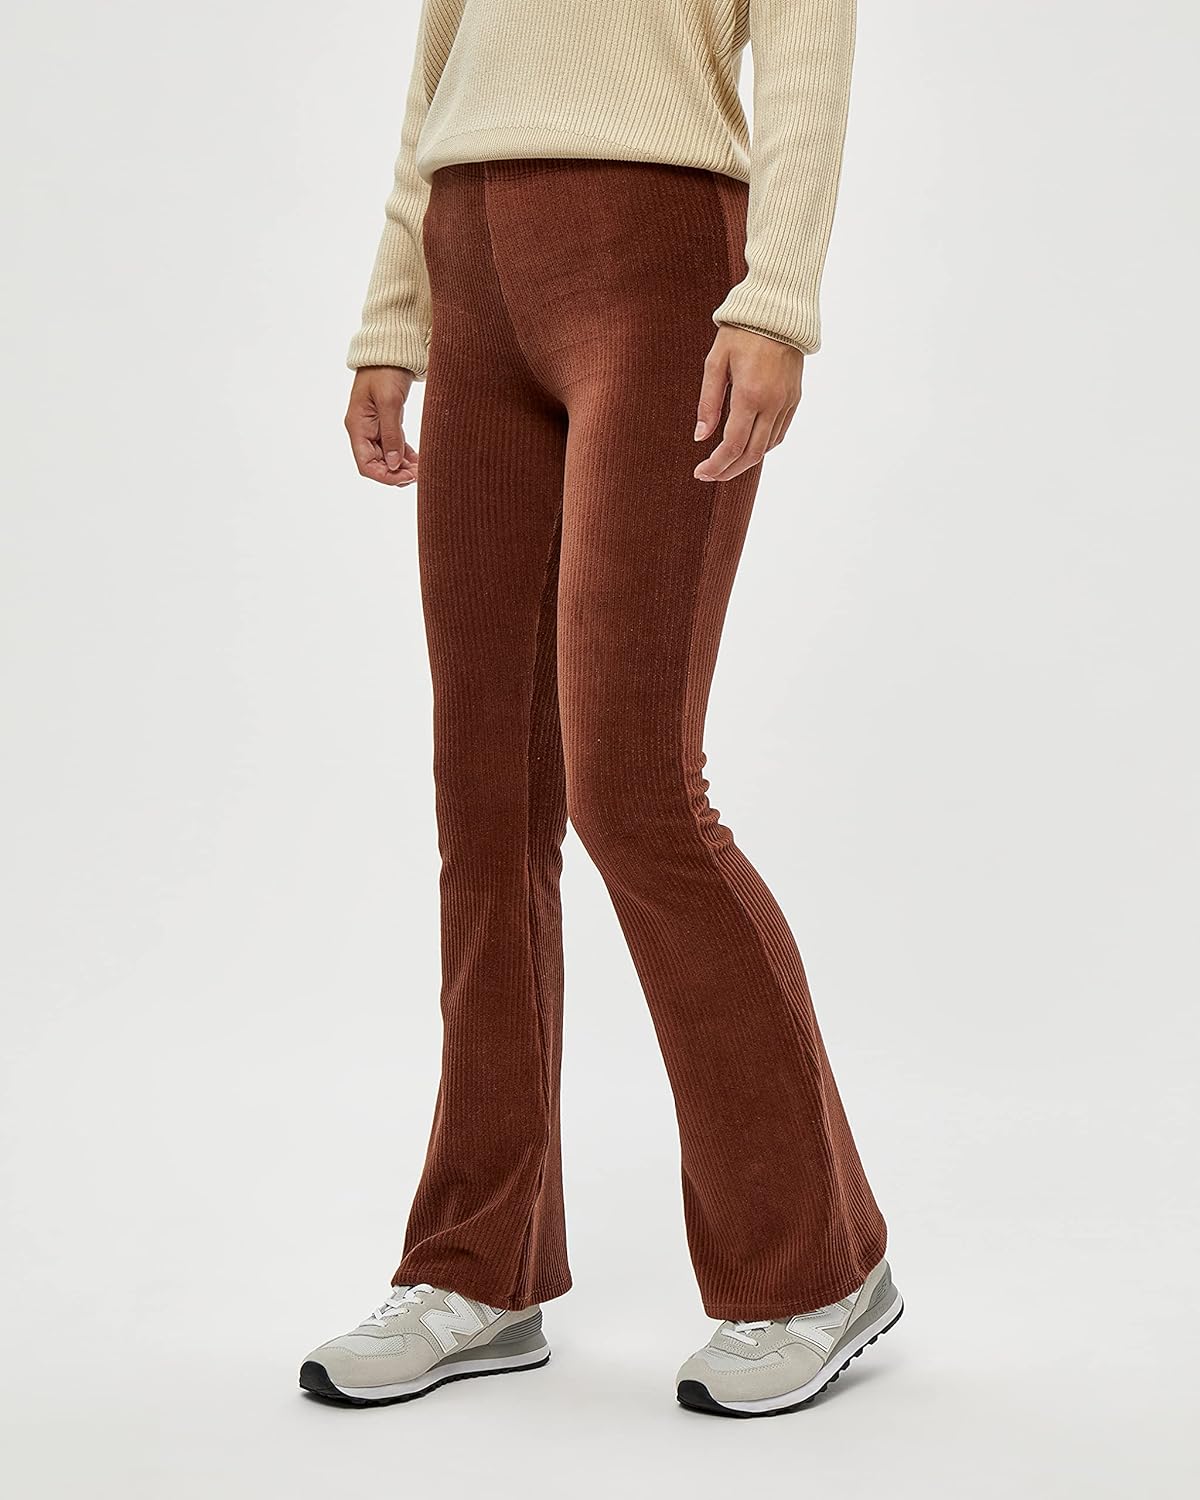 amazon, si hay unos leggings para llevar con americana, son estos